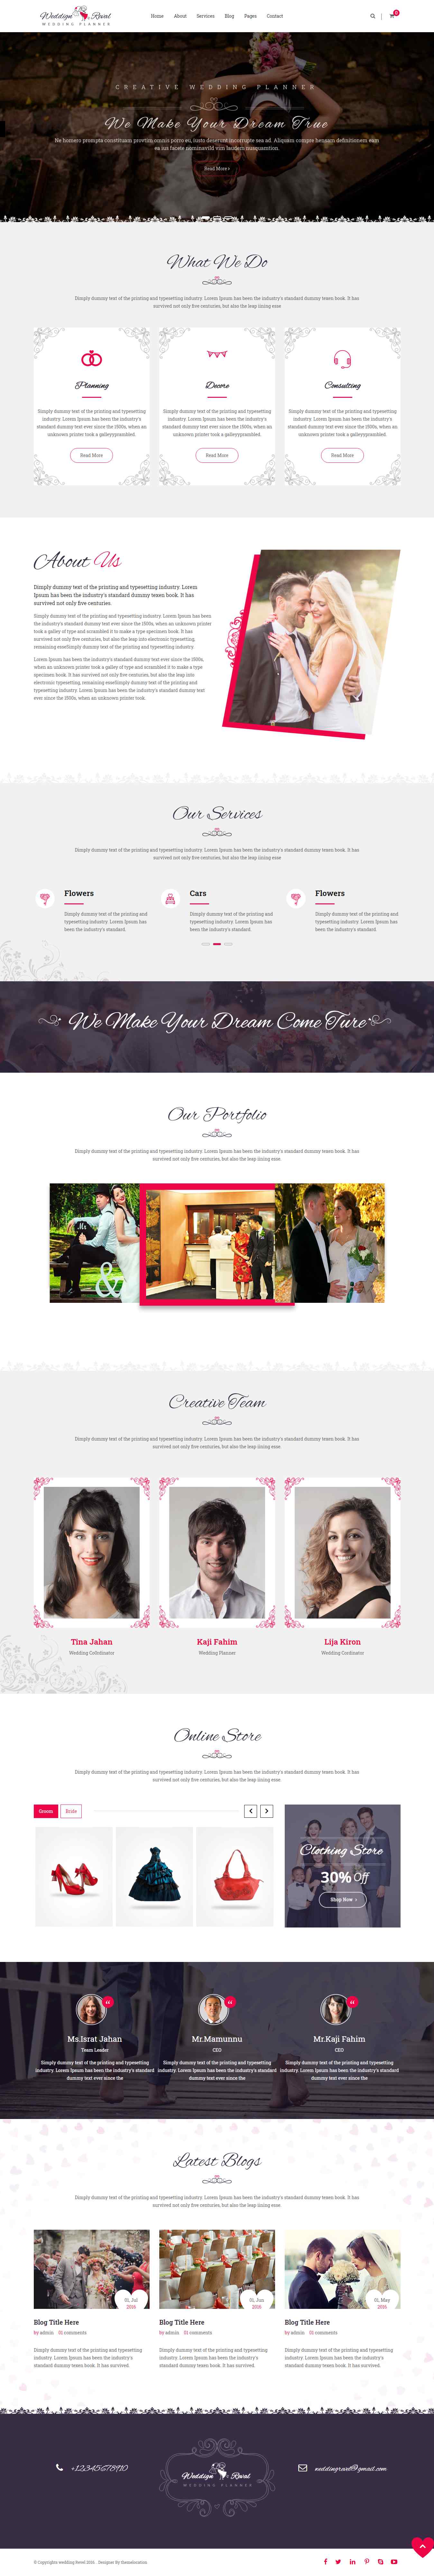 红色欧美风格的婚纱摄影婚礼企业网站源码下载